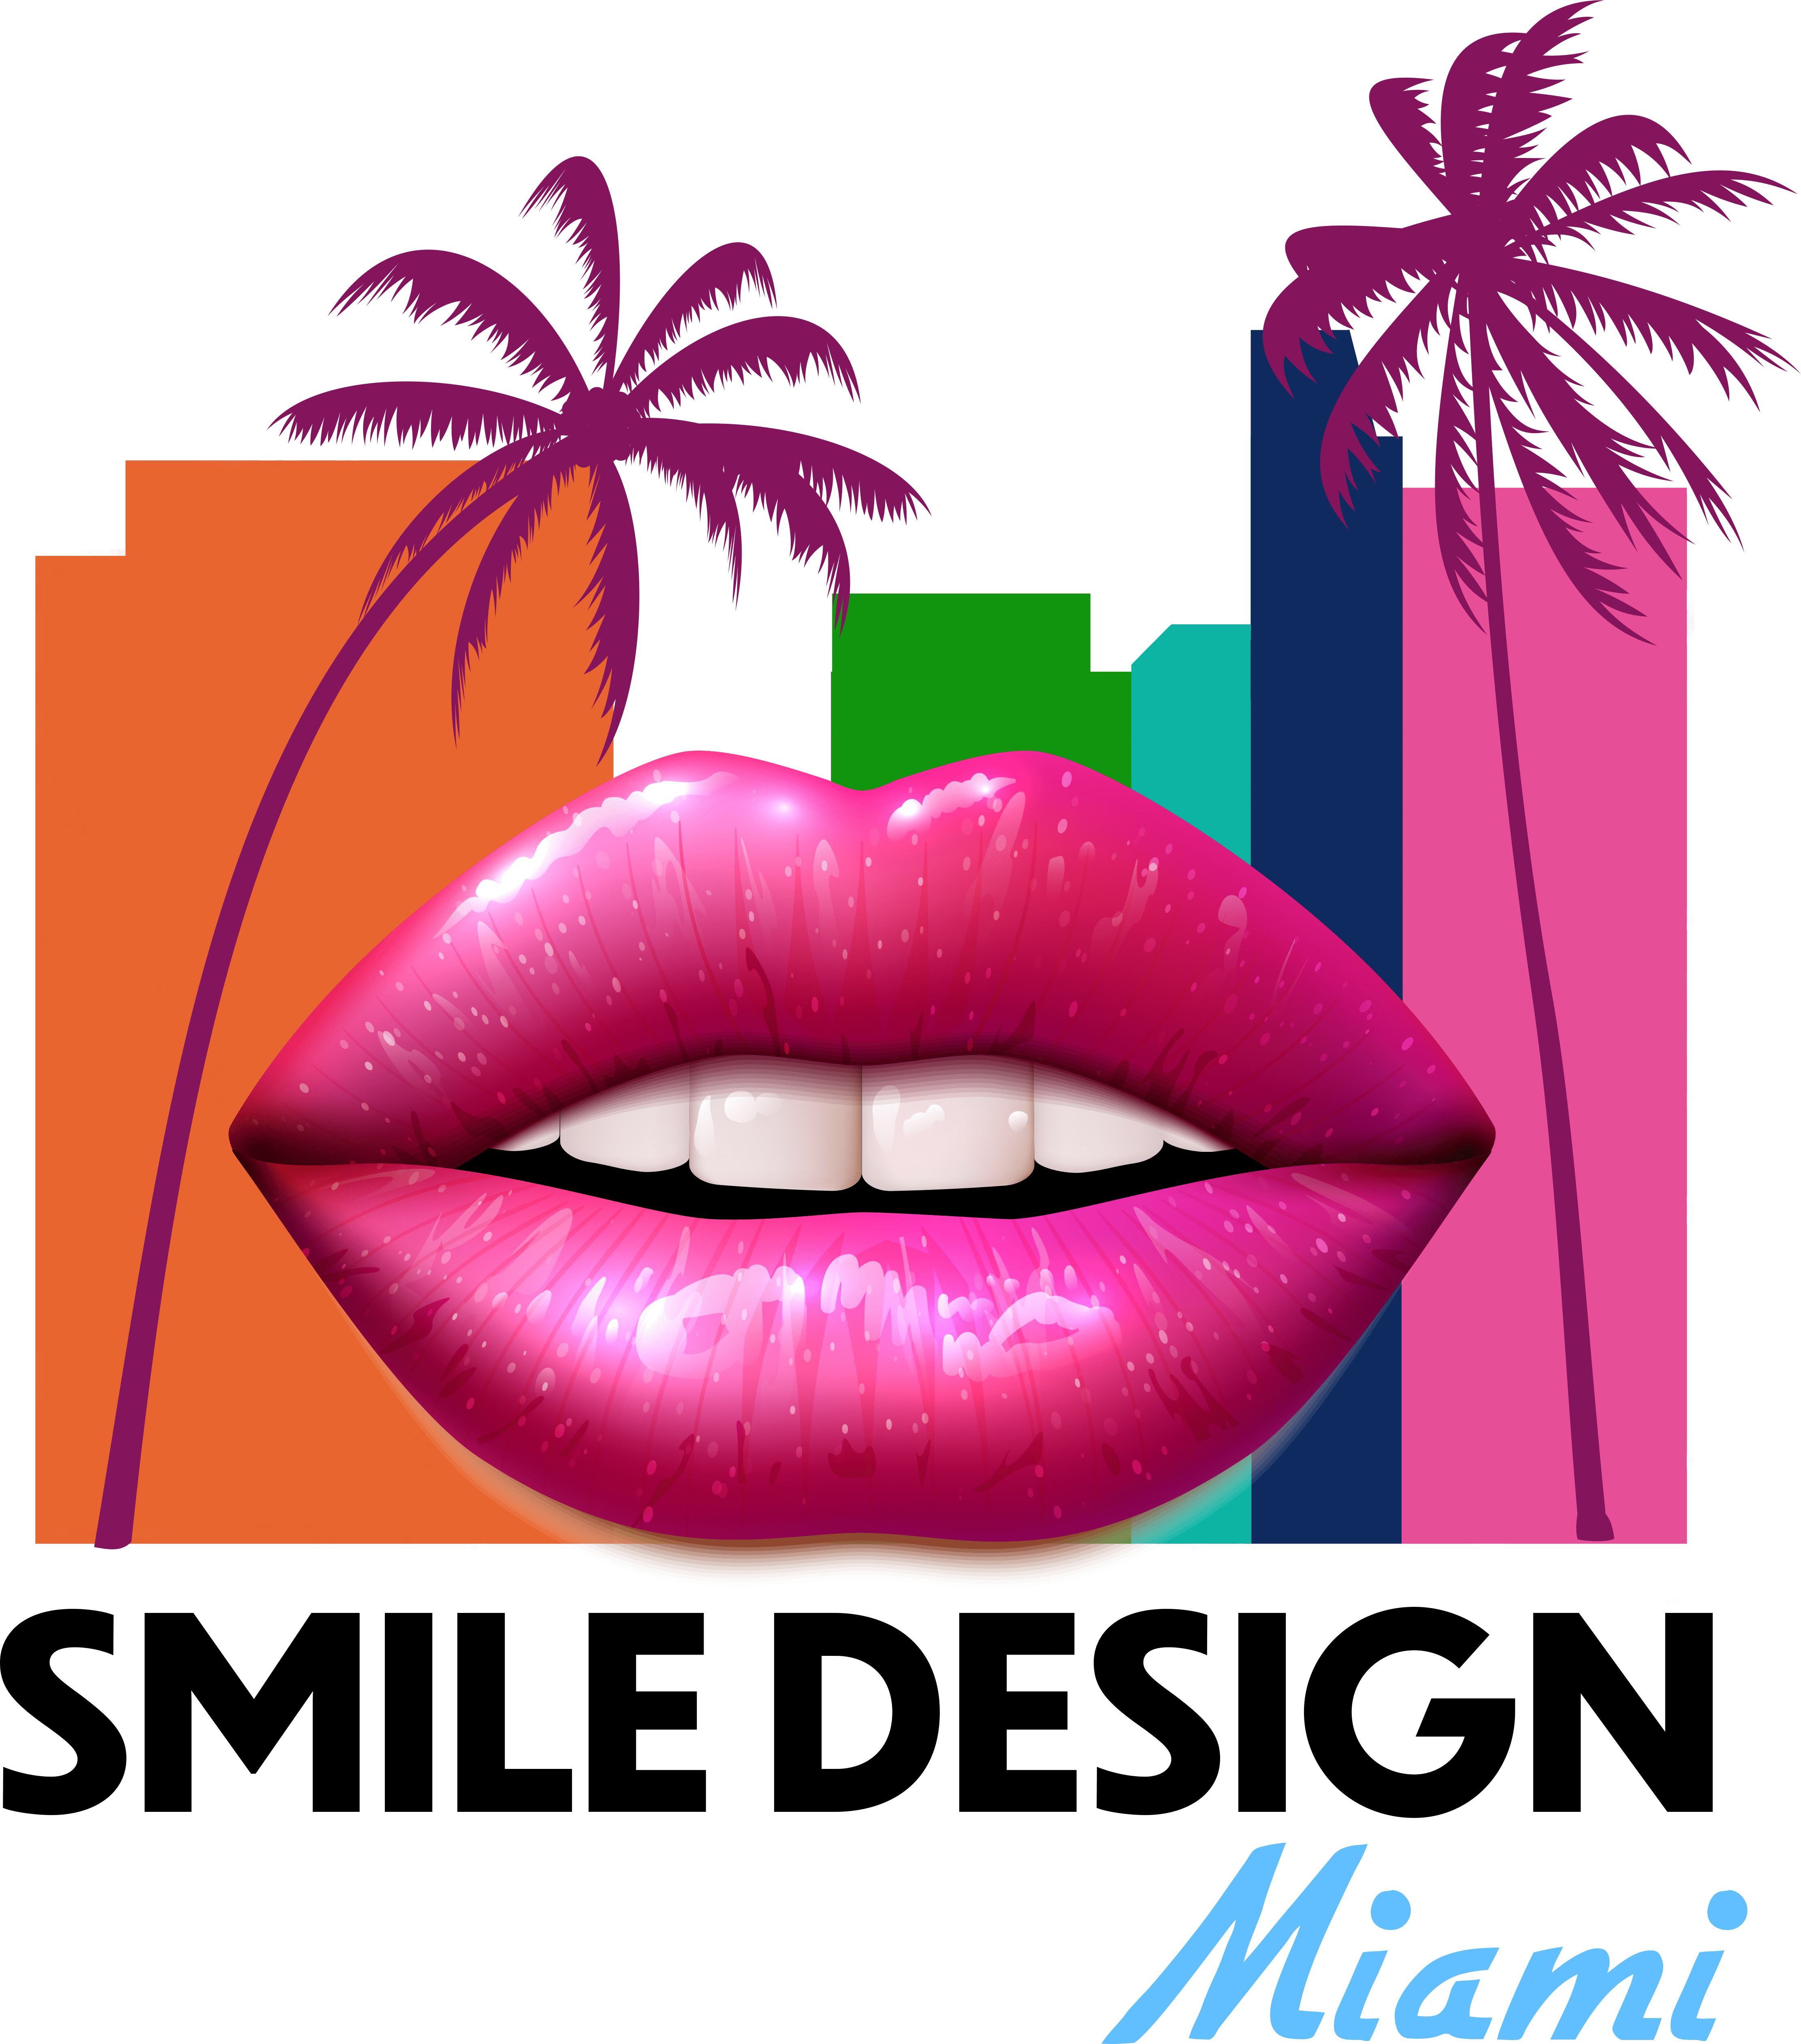 My Smile Design Miami